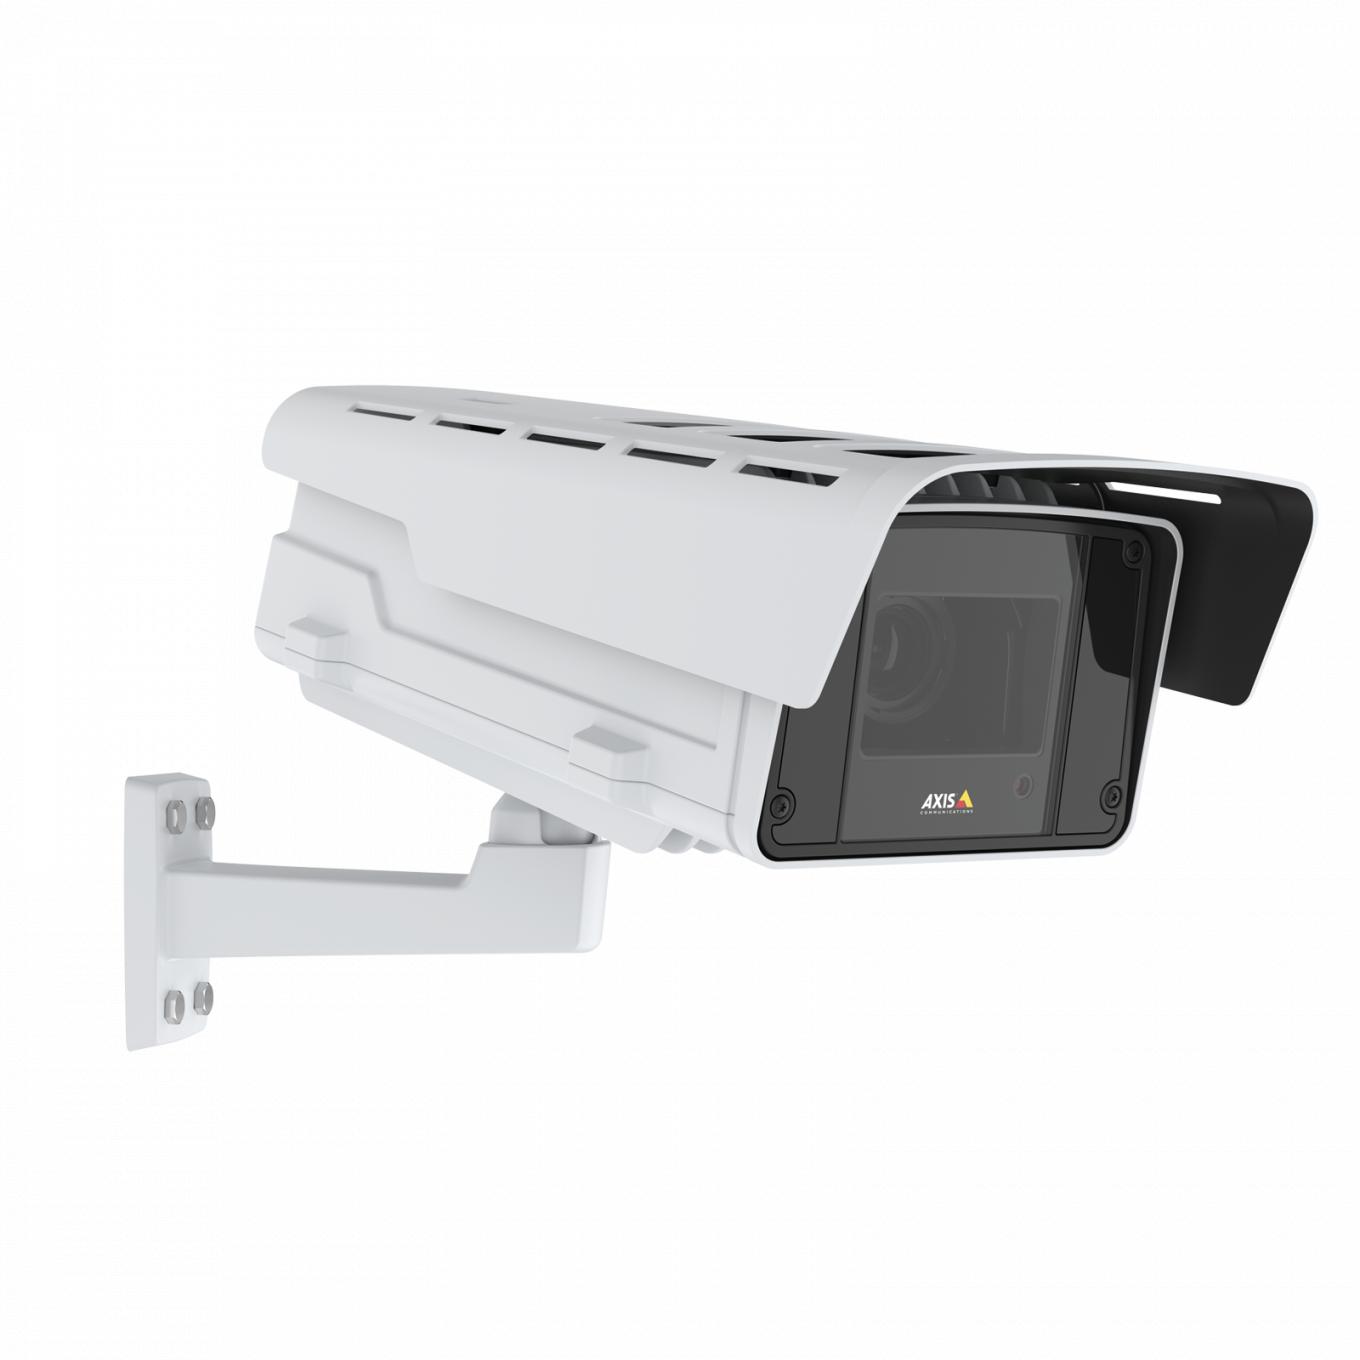 IP-камера AXIS Q1615-LE Mk III IP Camera, вид под углом справа